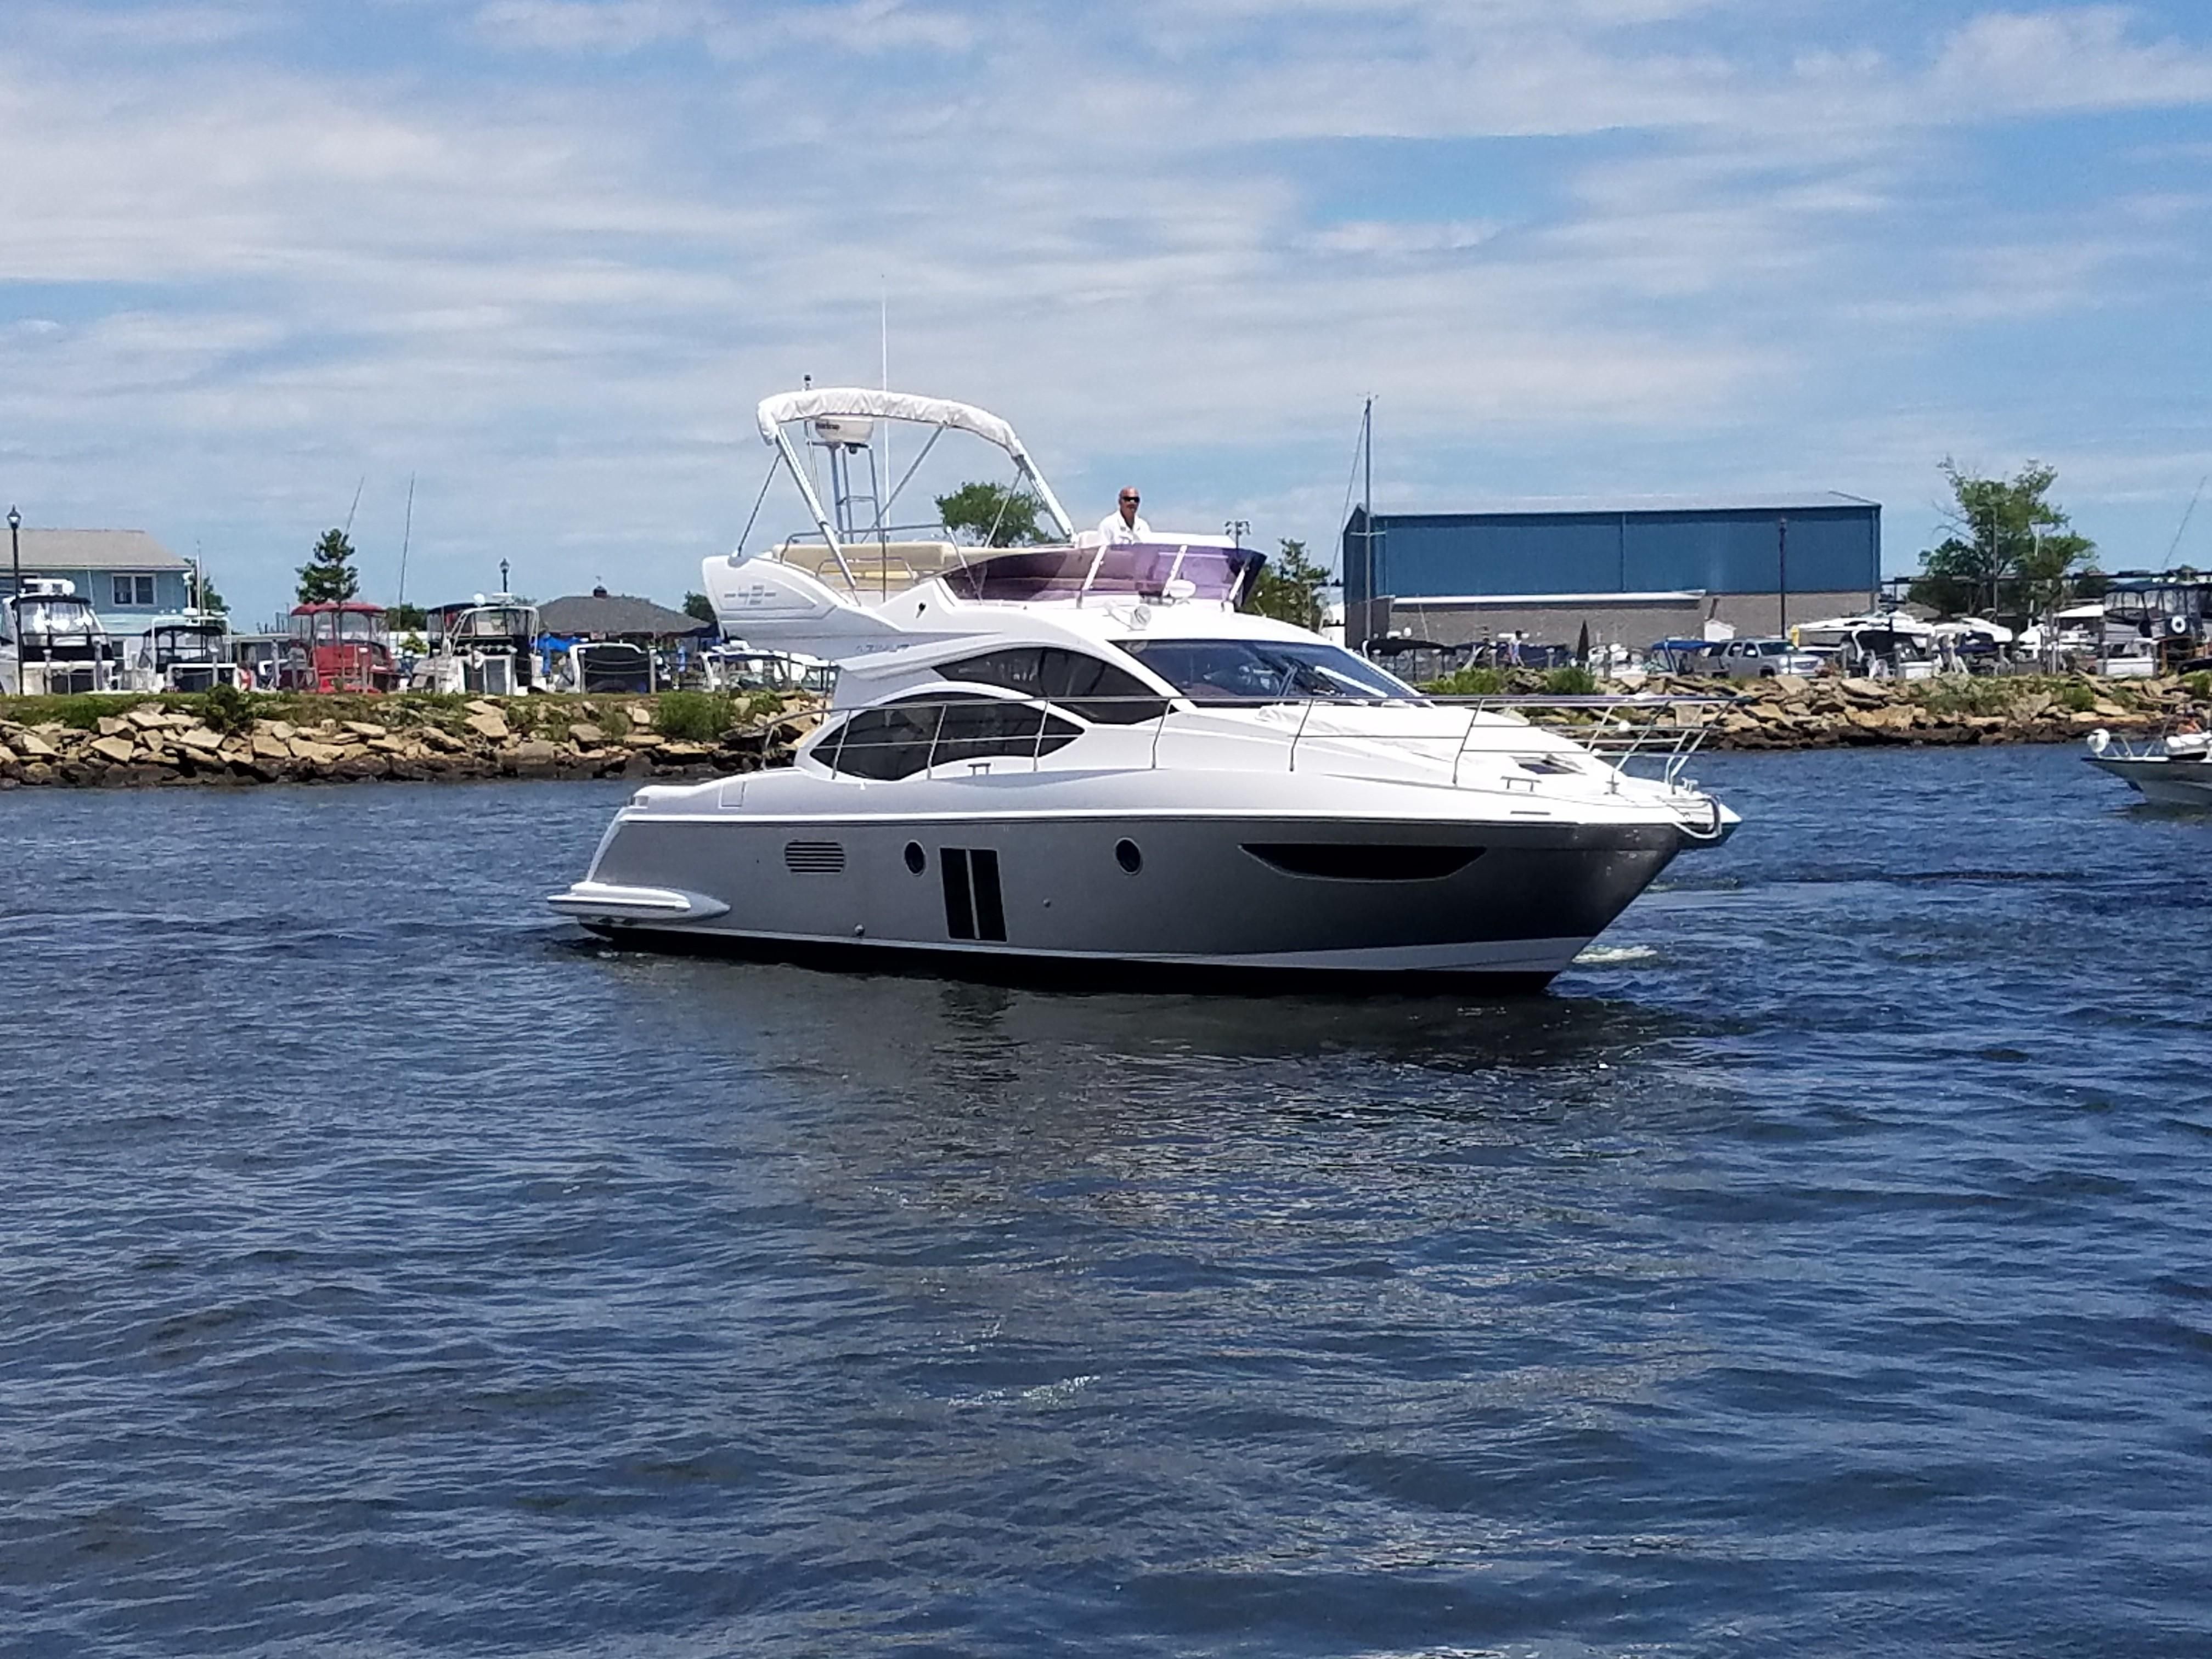 azimut yacht 42 price